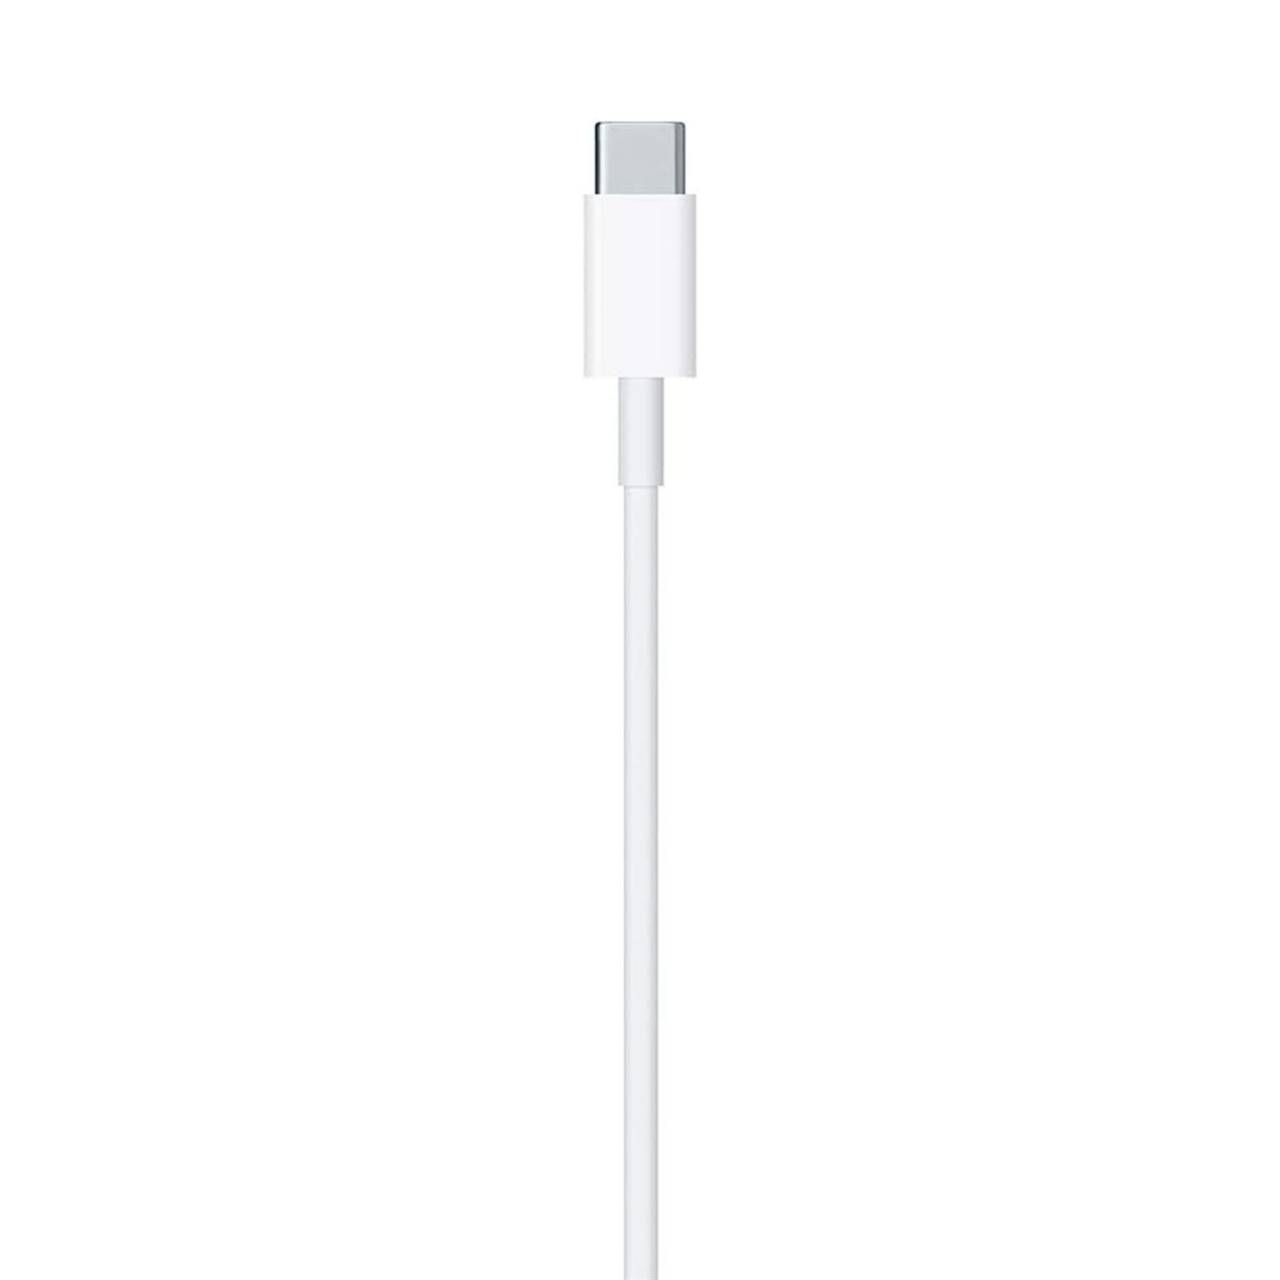 Apple Ladekabel – USB-C auf Lightning für iPhone 5 - 14 und iPad Modelle, Schnelle Datenübertragung, Länge 1,0 m